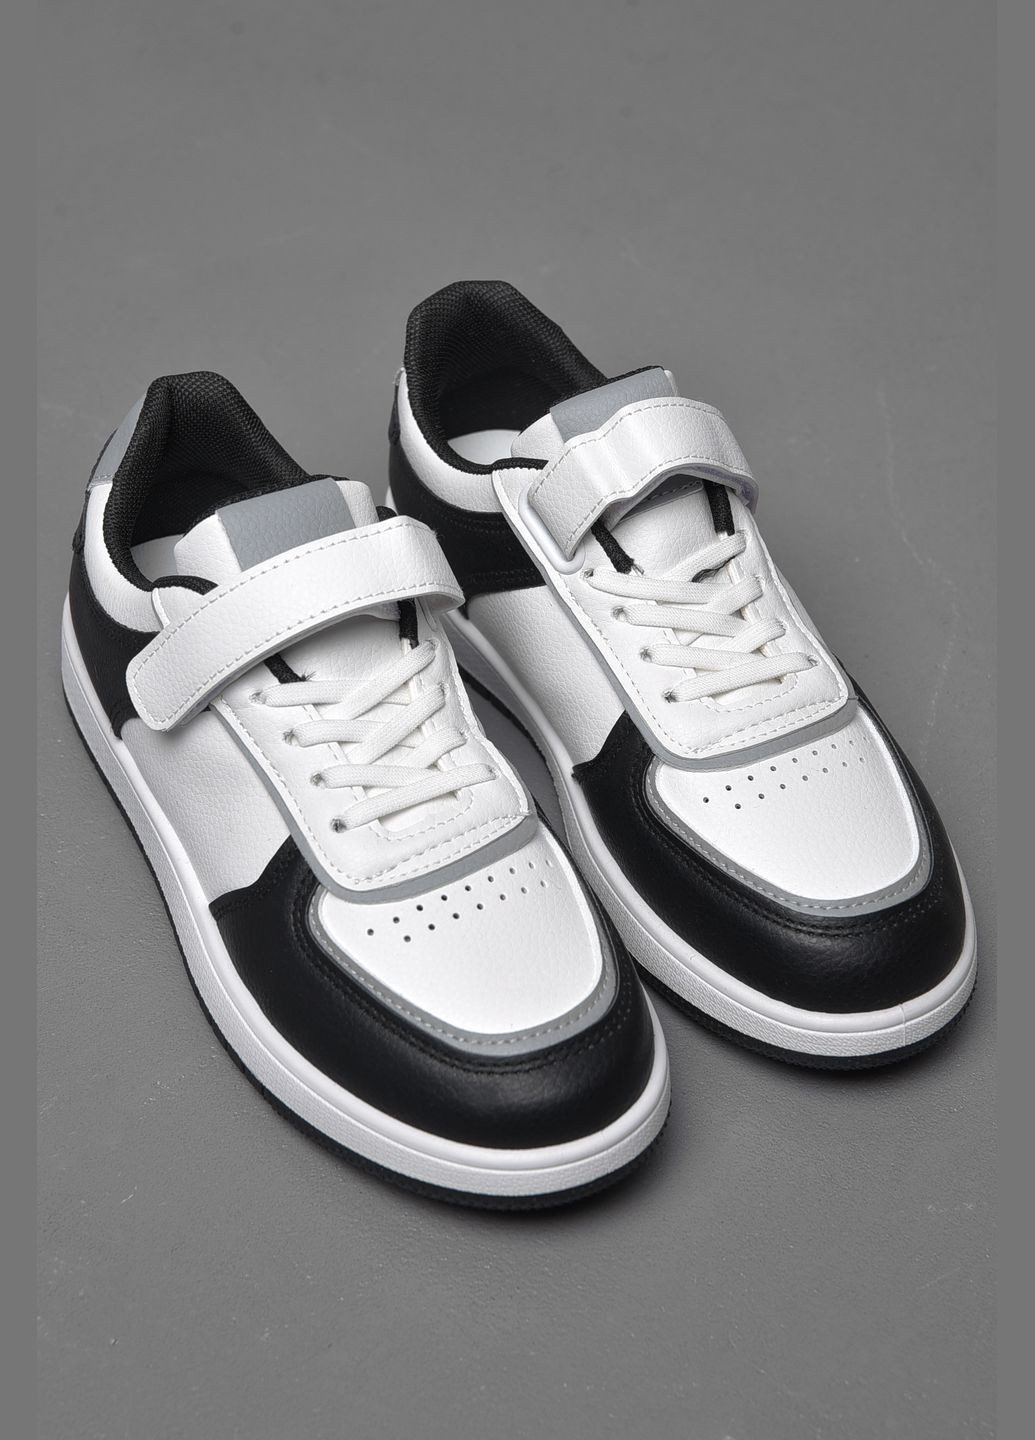 Черно-белые демисезонные кроссовки детские черно-белого цвета Let's Shop